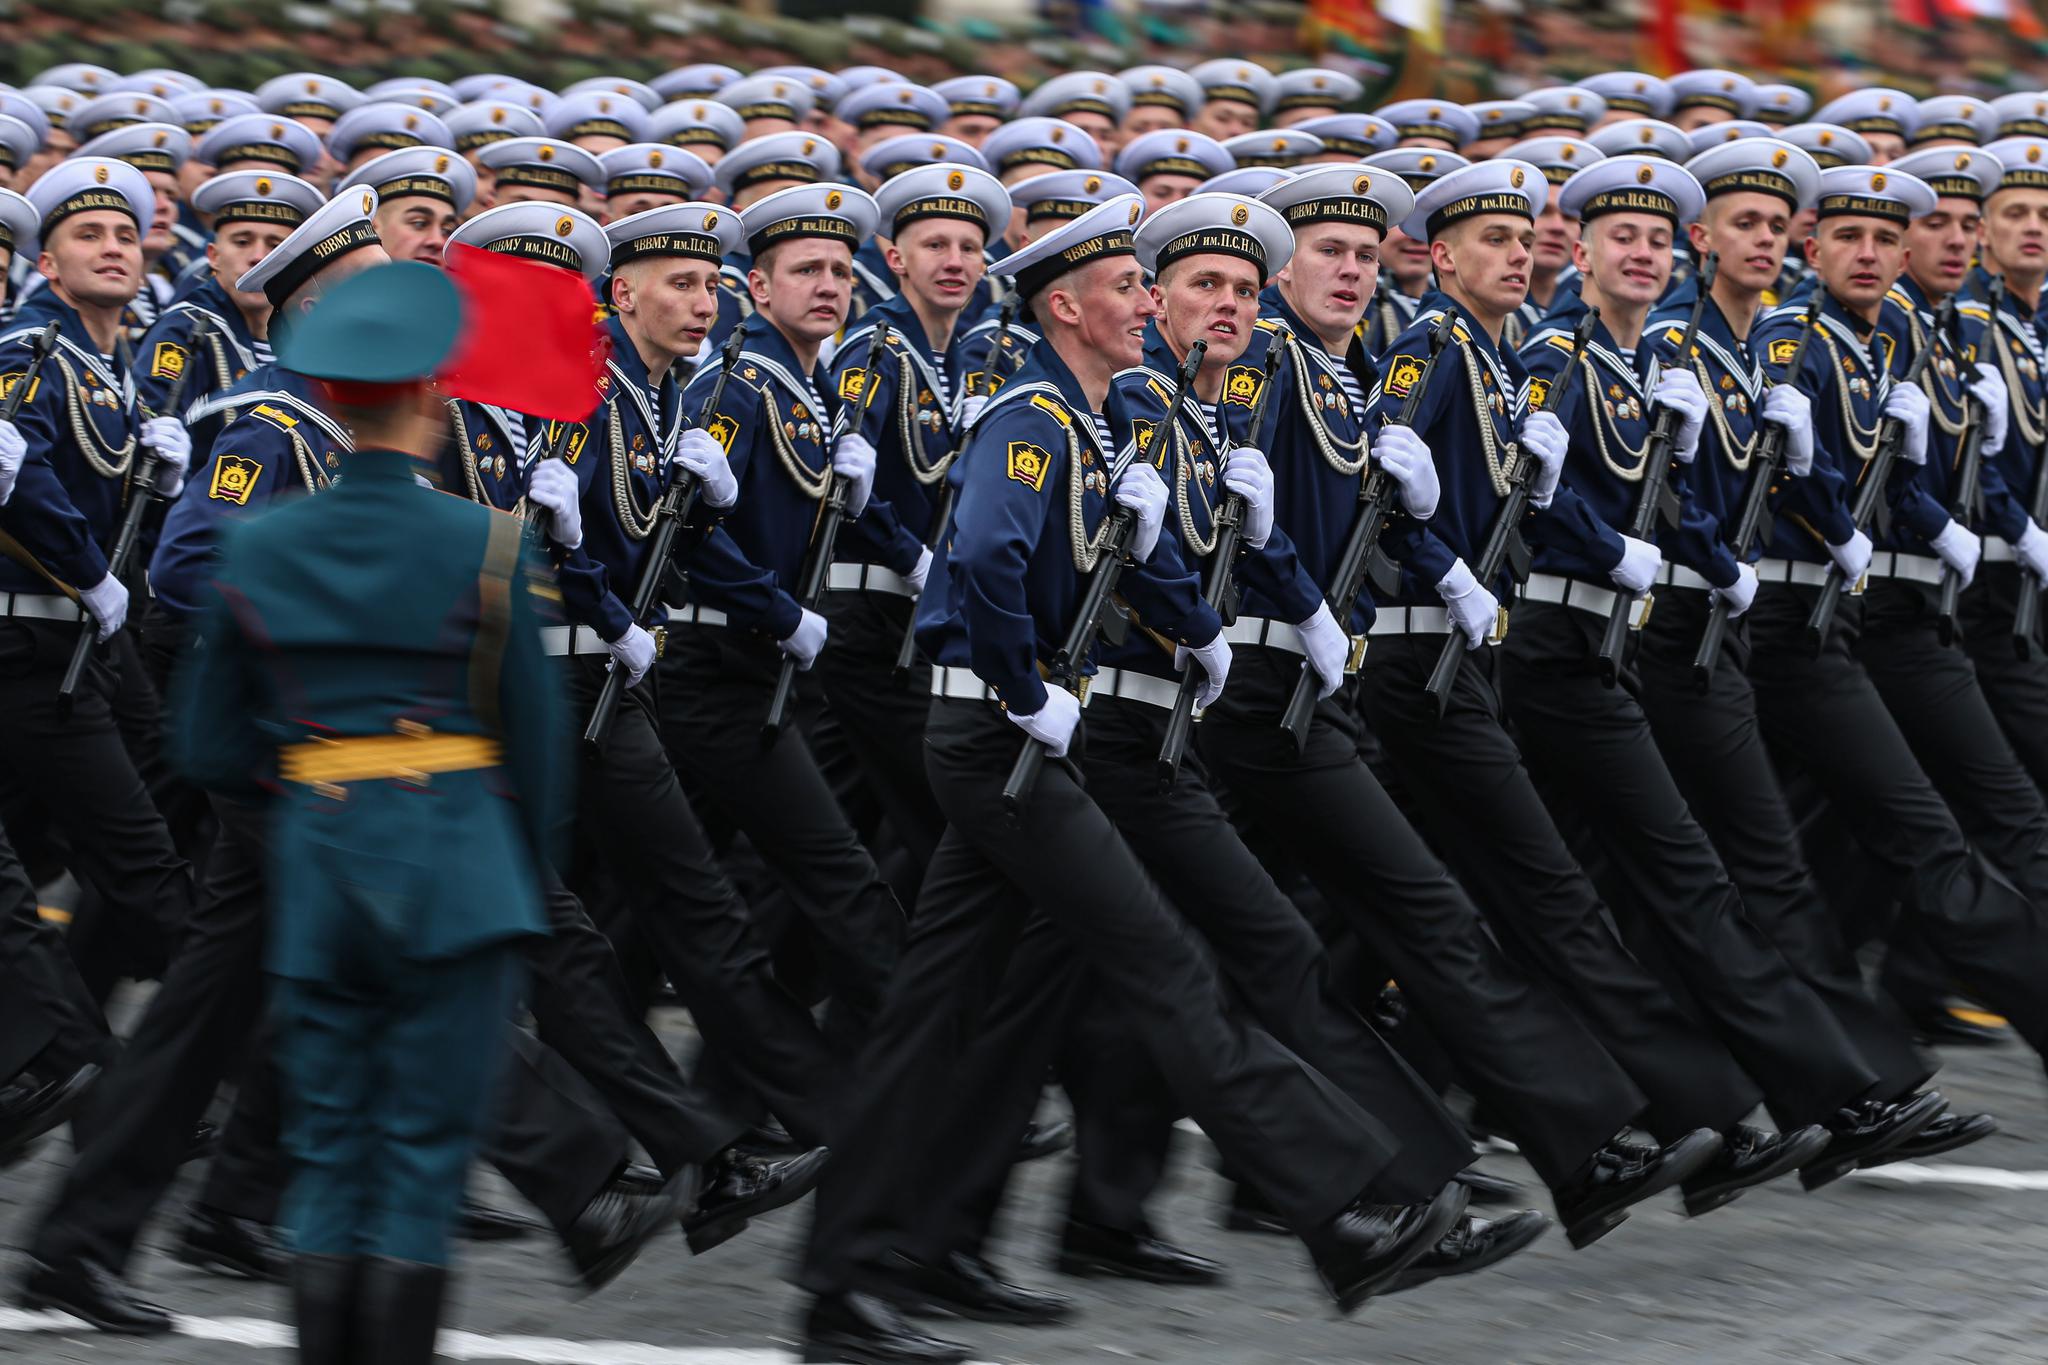 5月9日,在俄罗斯莫斯科举行的胜利日阅兵式上,仪仗兵走过红场